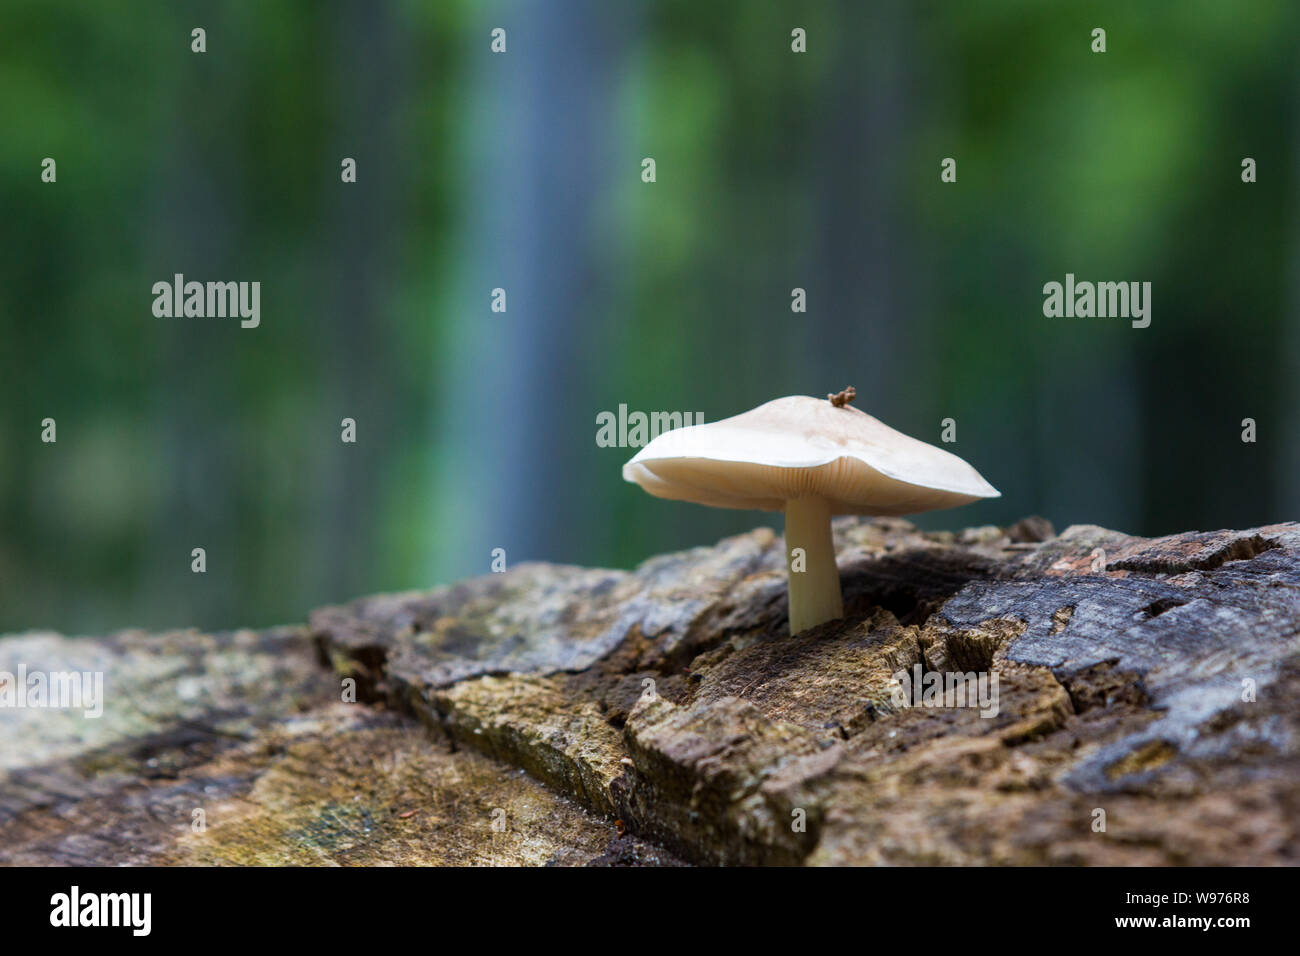 Pluteus petasatus mushroom on tree stump in summer forest, Matra Mountains, Hungary Stock Photo